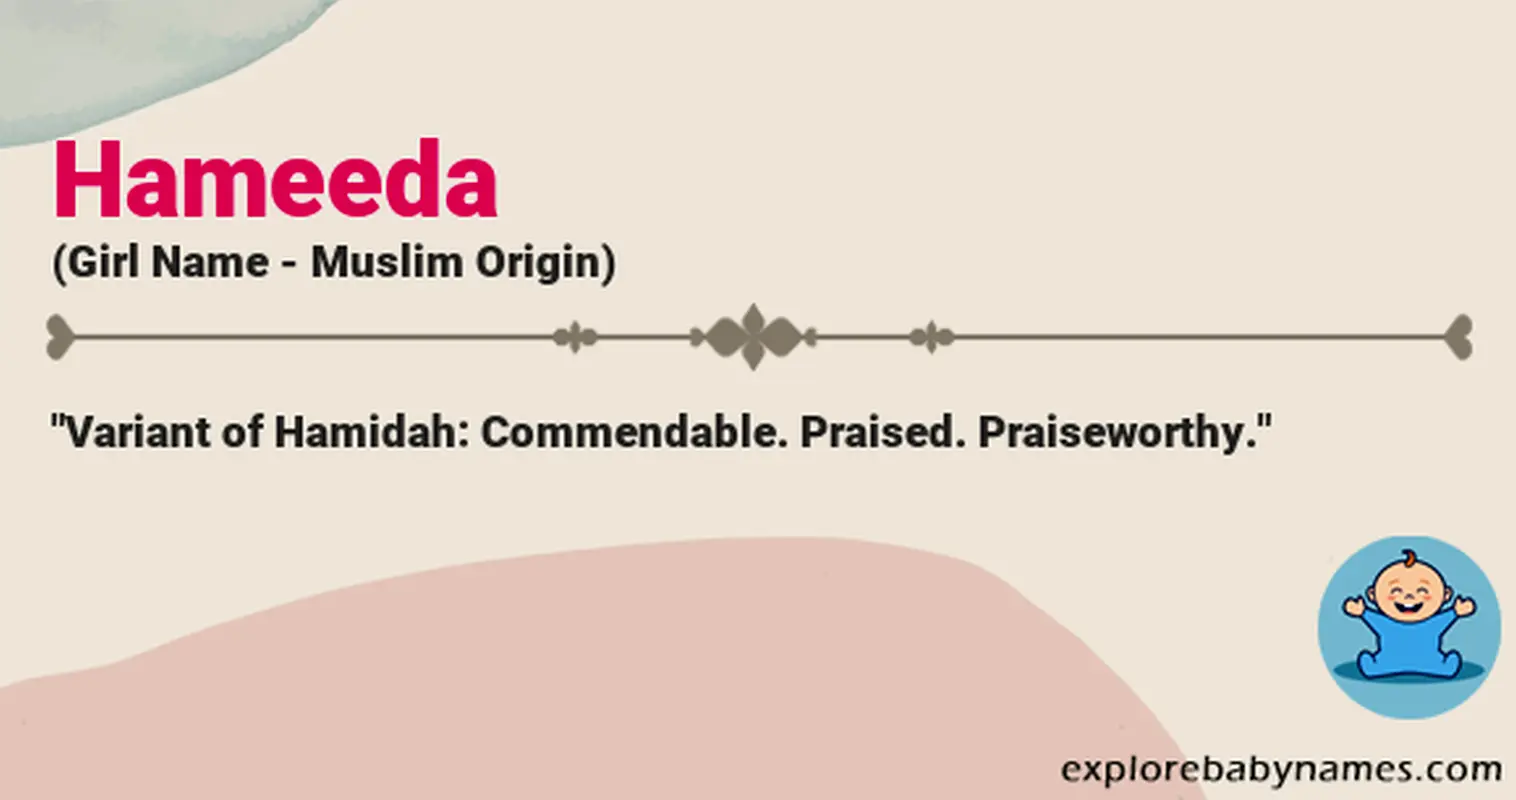 Meaning of Hameeda